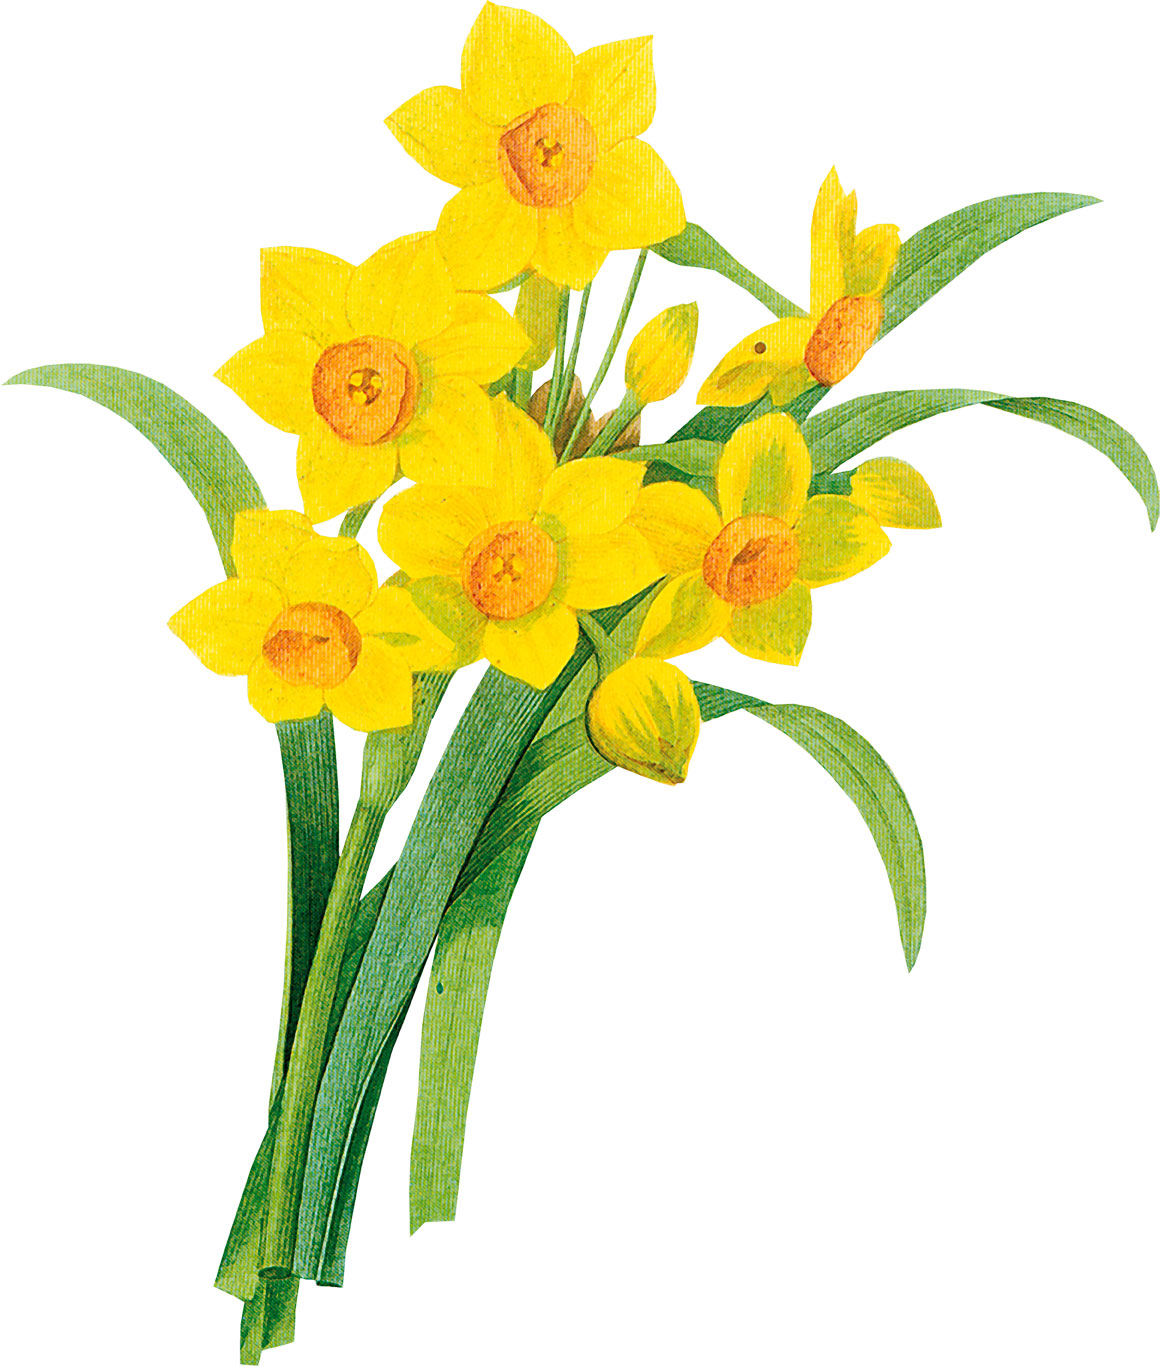 黄色の花の写真 フリー素材 No 439 水仙 黄 葉